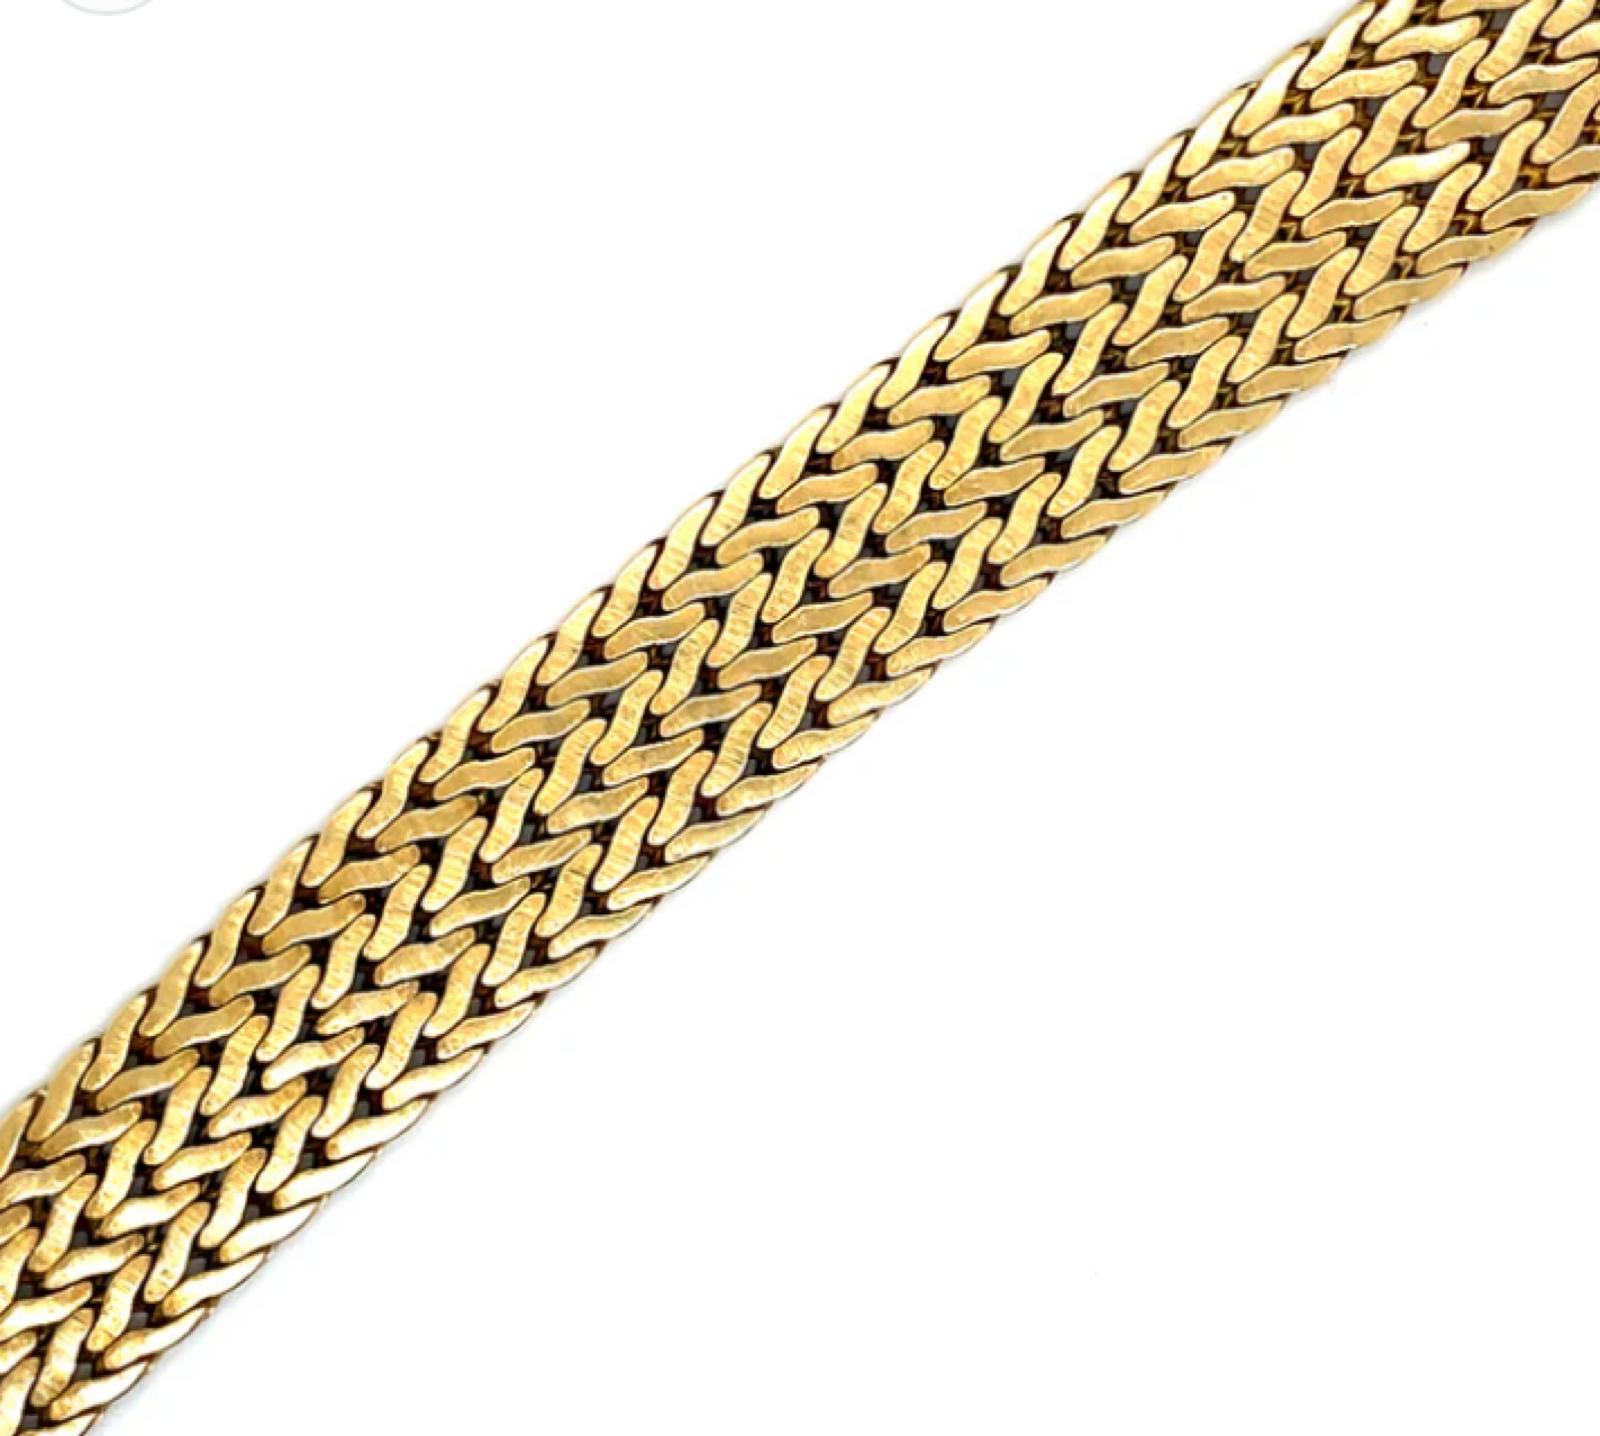 Ein Buccellati-Armband aus 18 Karat Gelbgold, um 1970.

Dieses fein gearbeitete Armband aus 18 Karat Gelbgold besteht aus 3 Reihen flacher Chevron-Glieder und ist mit einem verdeckten Verschluss versehen.

Das Haus Buccellati ist berühmt für seinen